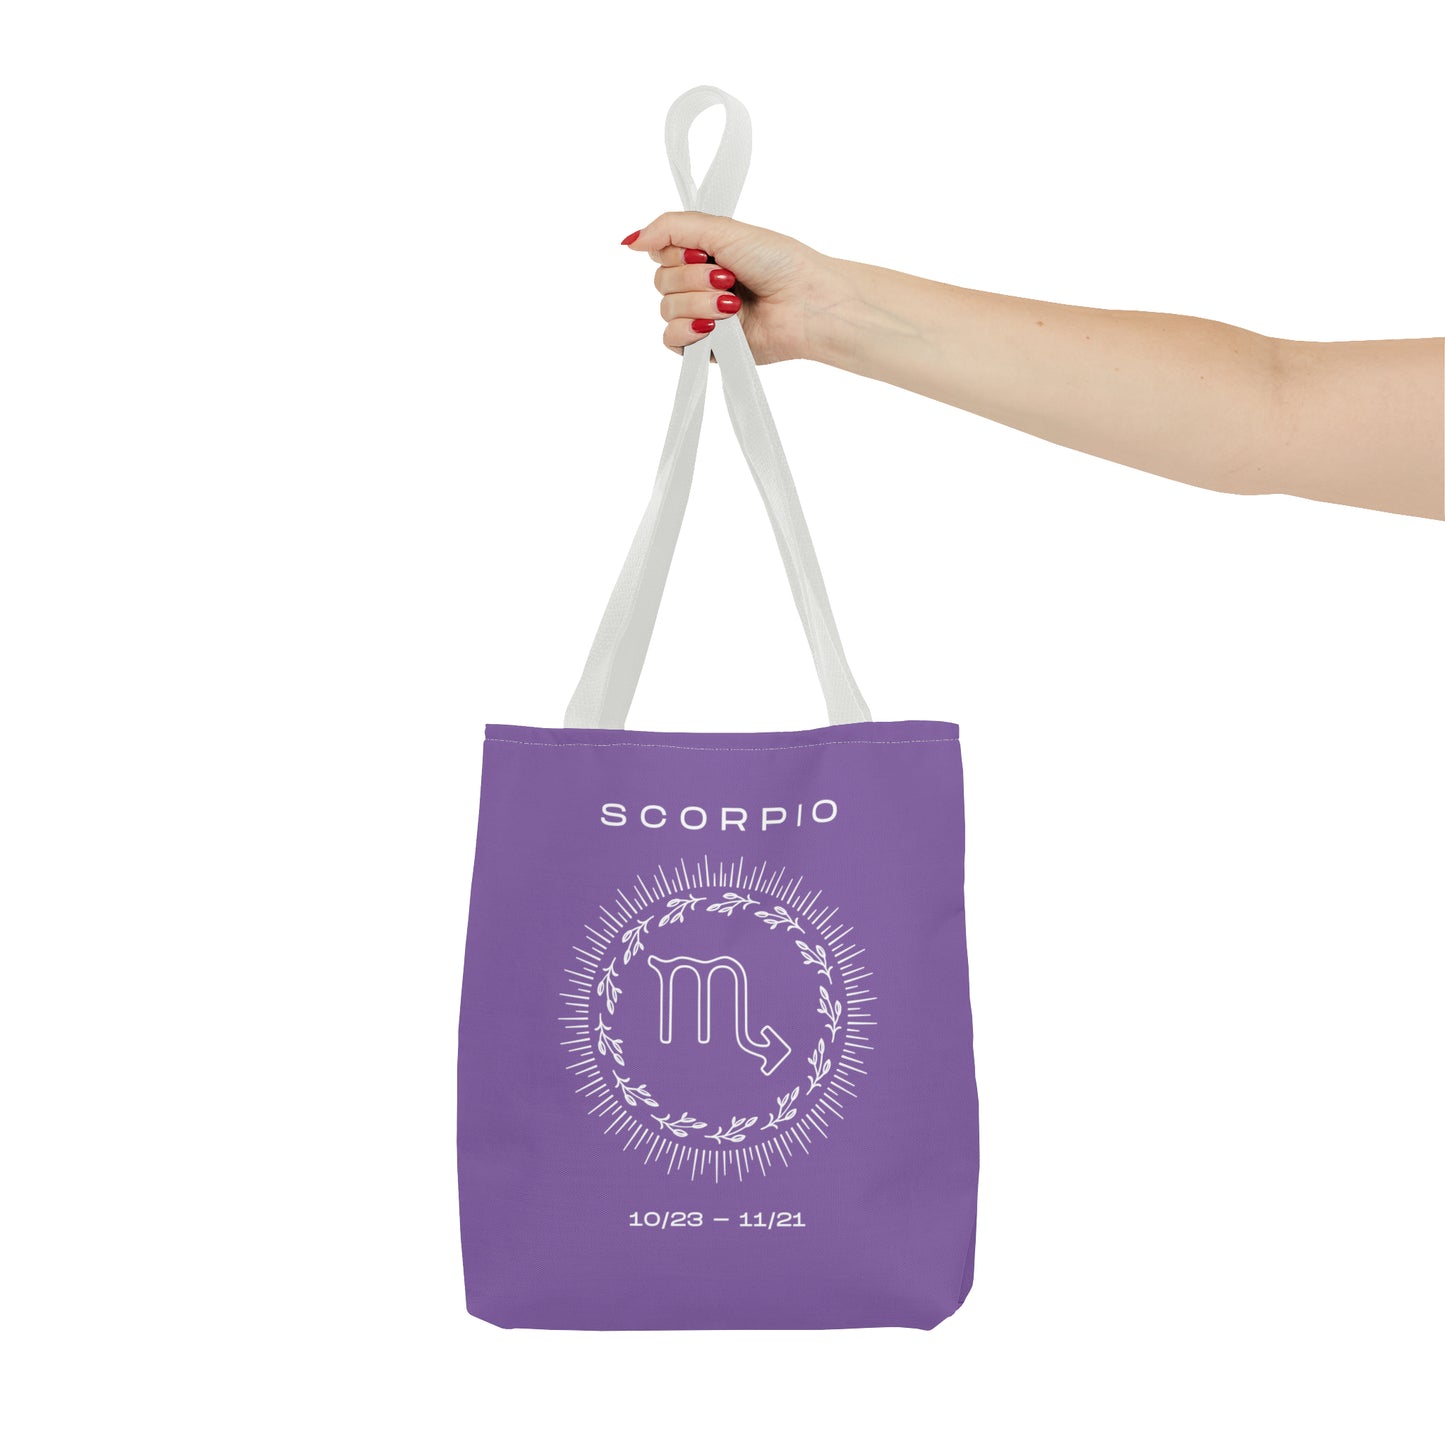 Scorpio Tote Bag, Purple